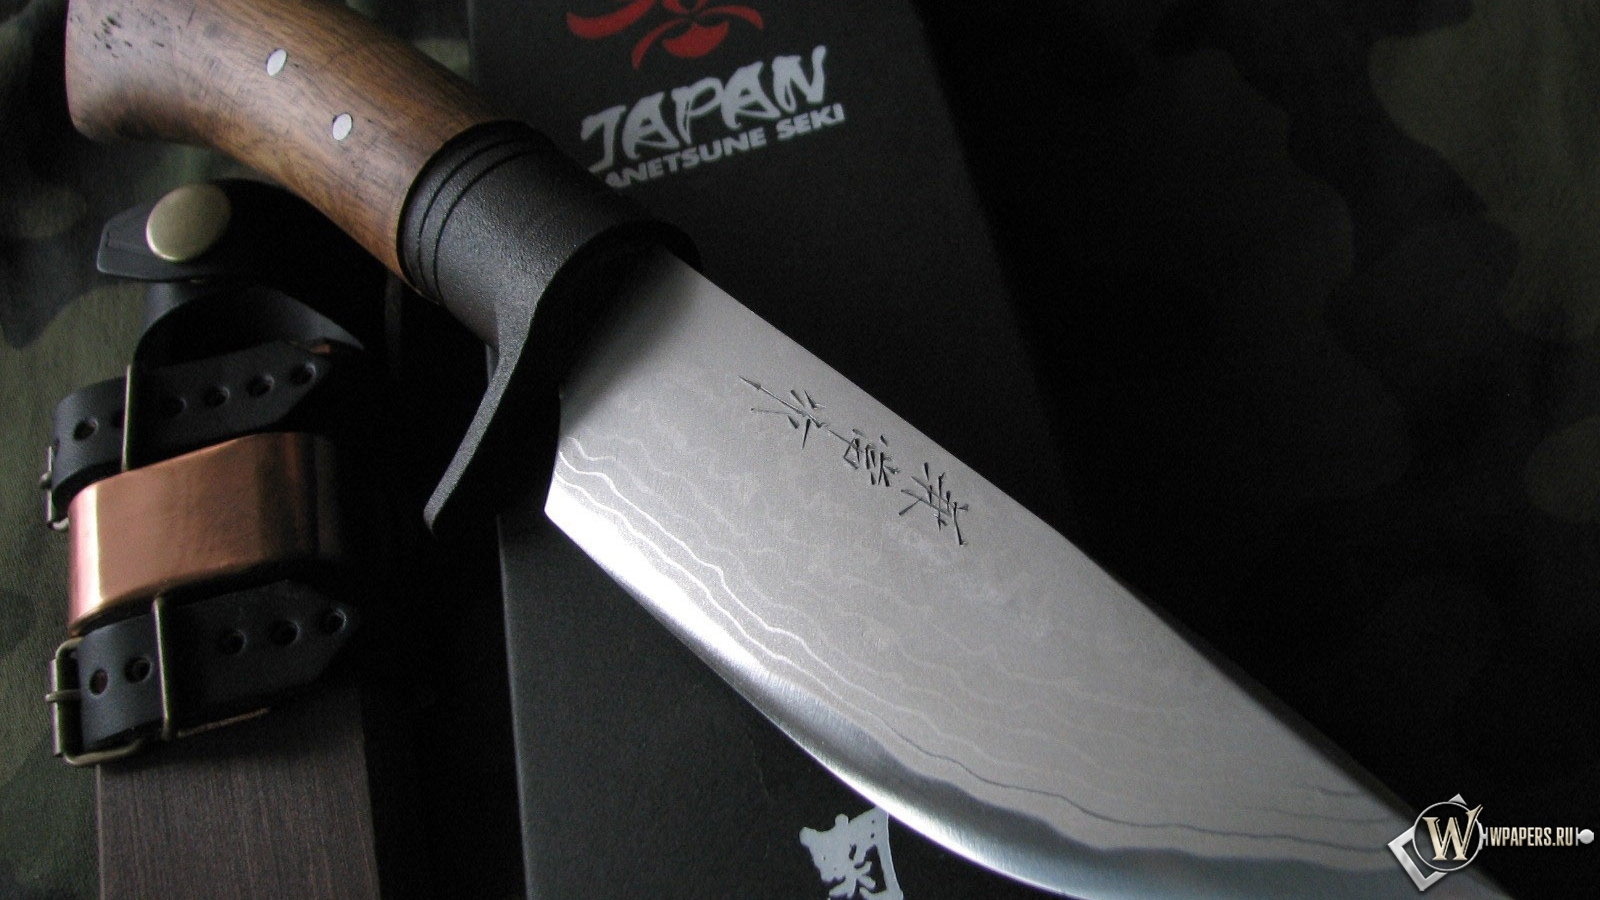 Японский нож 1600x900